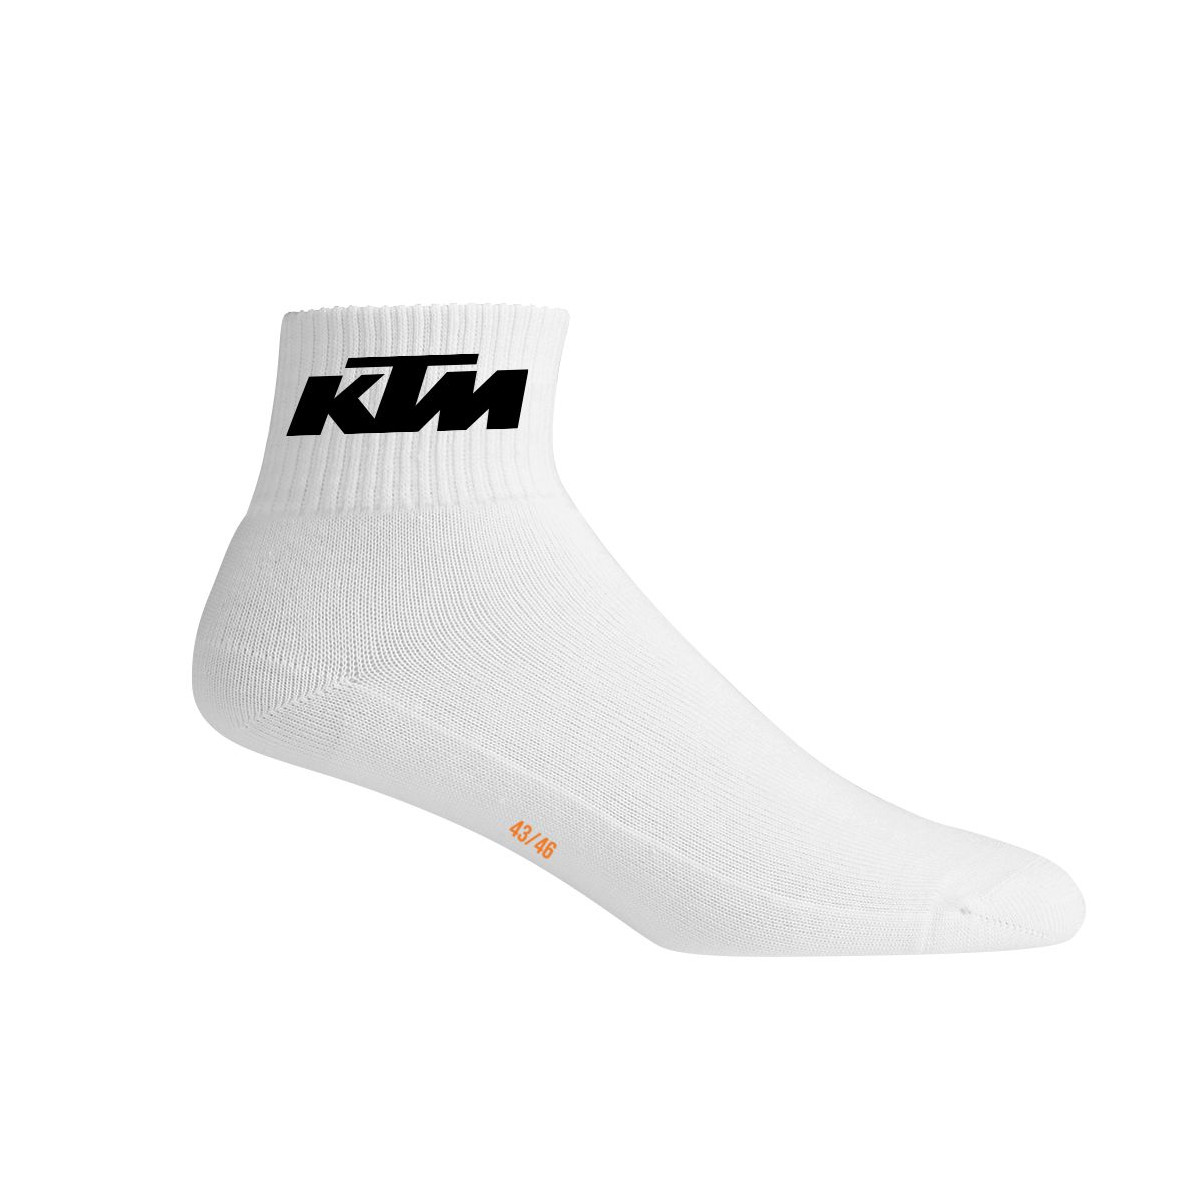 Lot de 6 Paires de chaussettes basses KTM blanches homme Résultats page  pour - Freegun